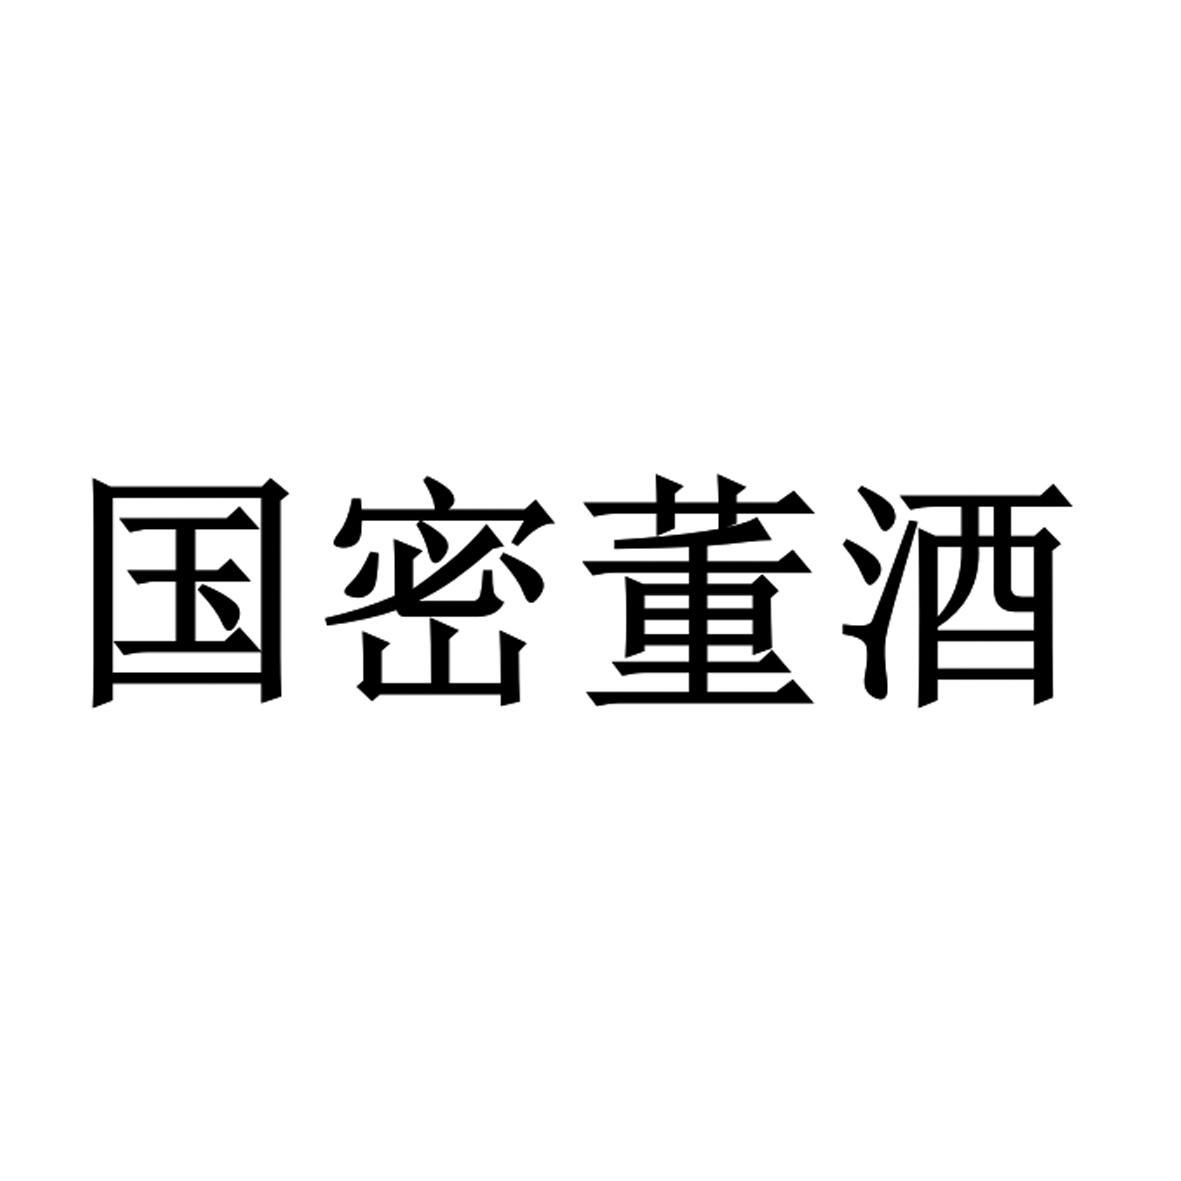 国密董酒logo图片